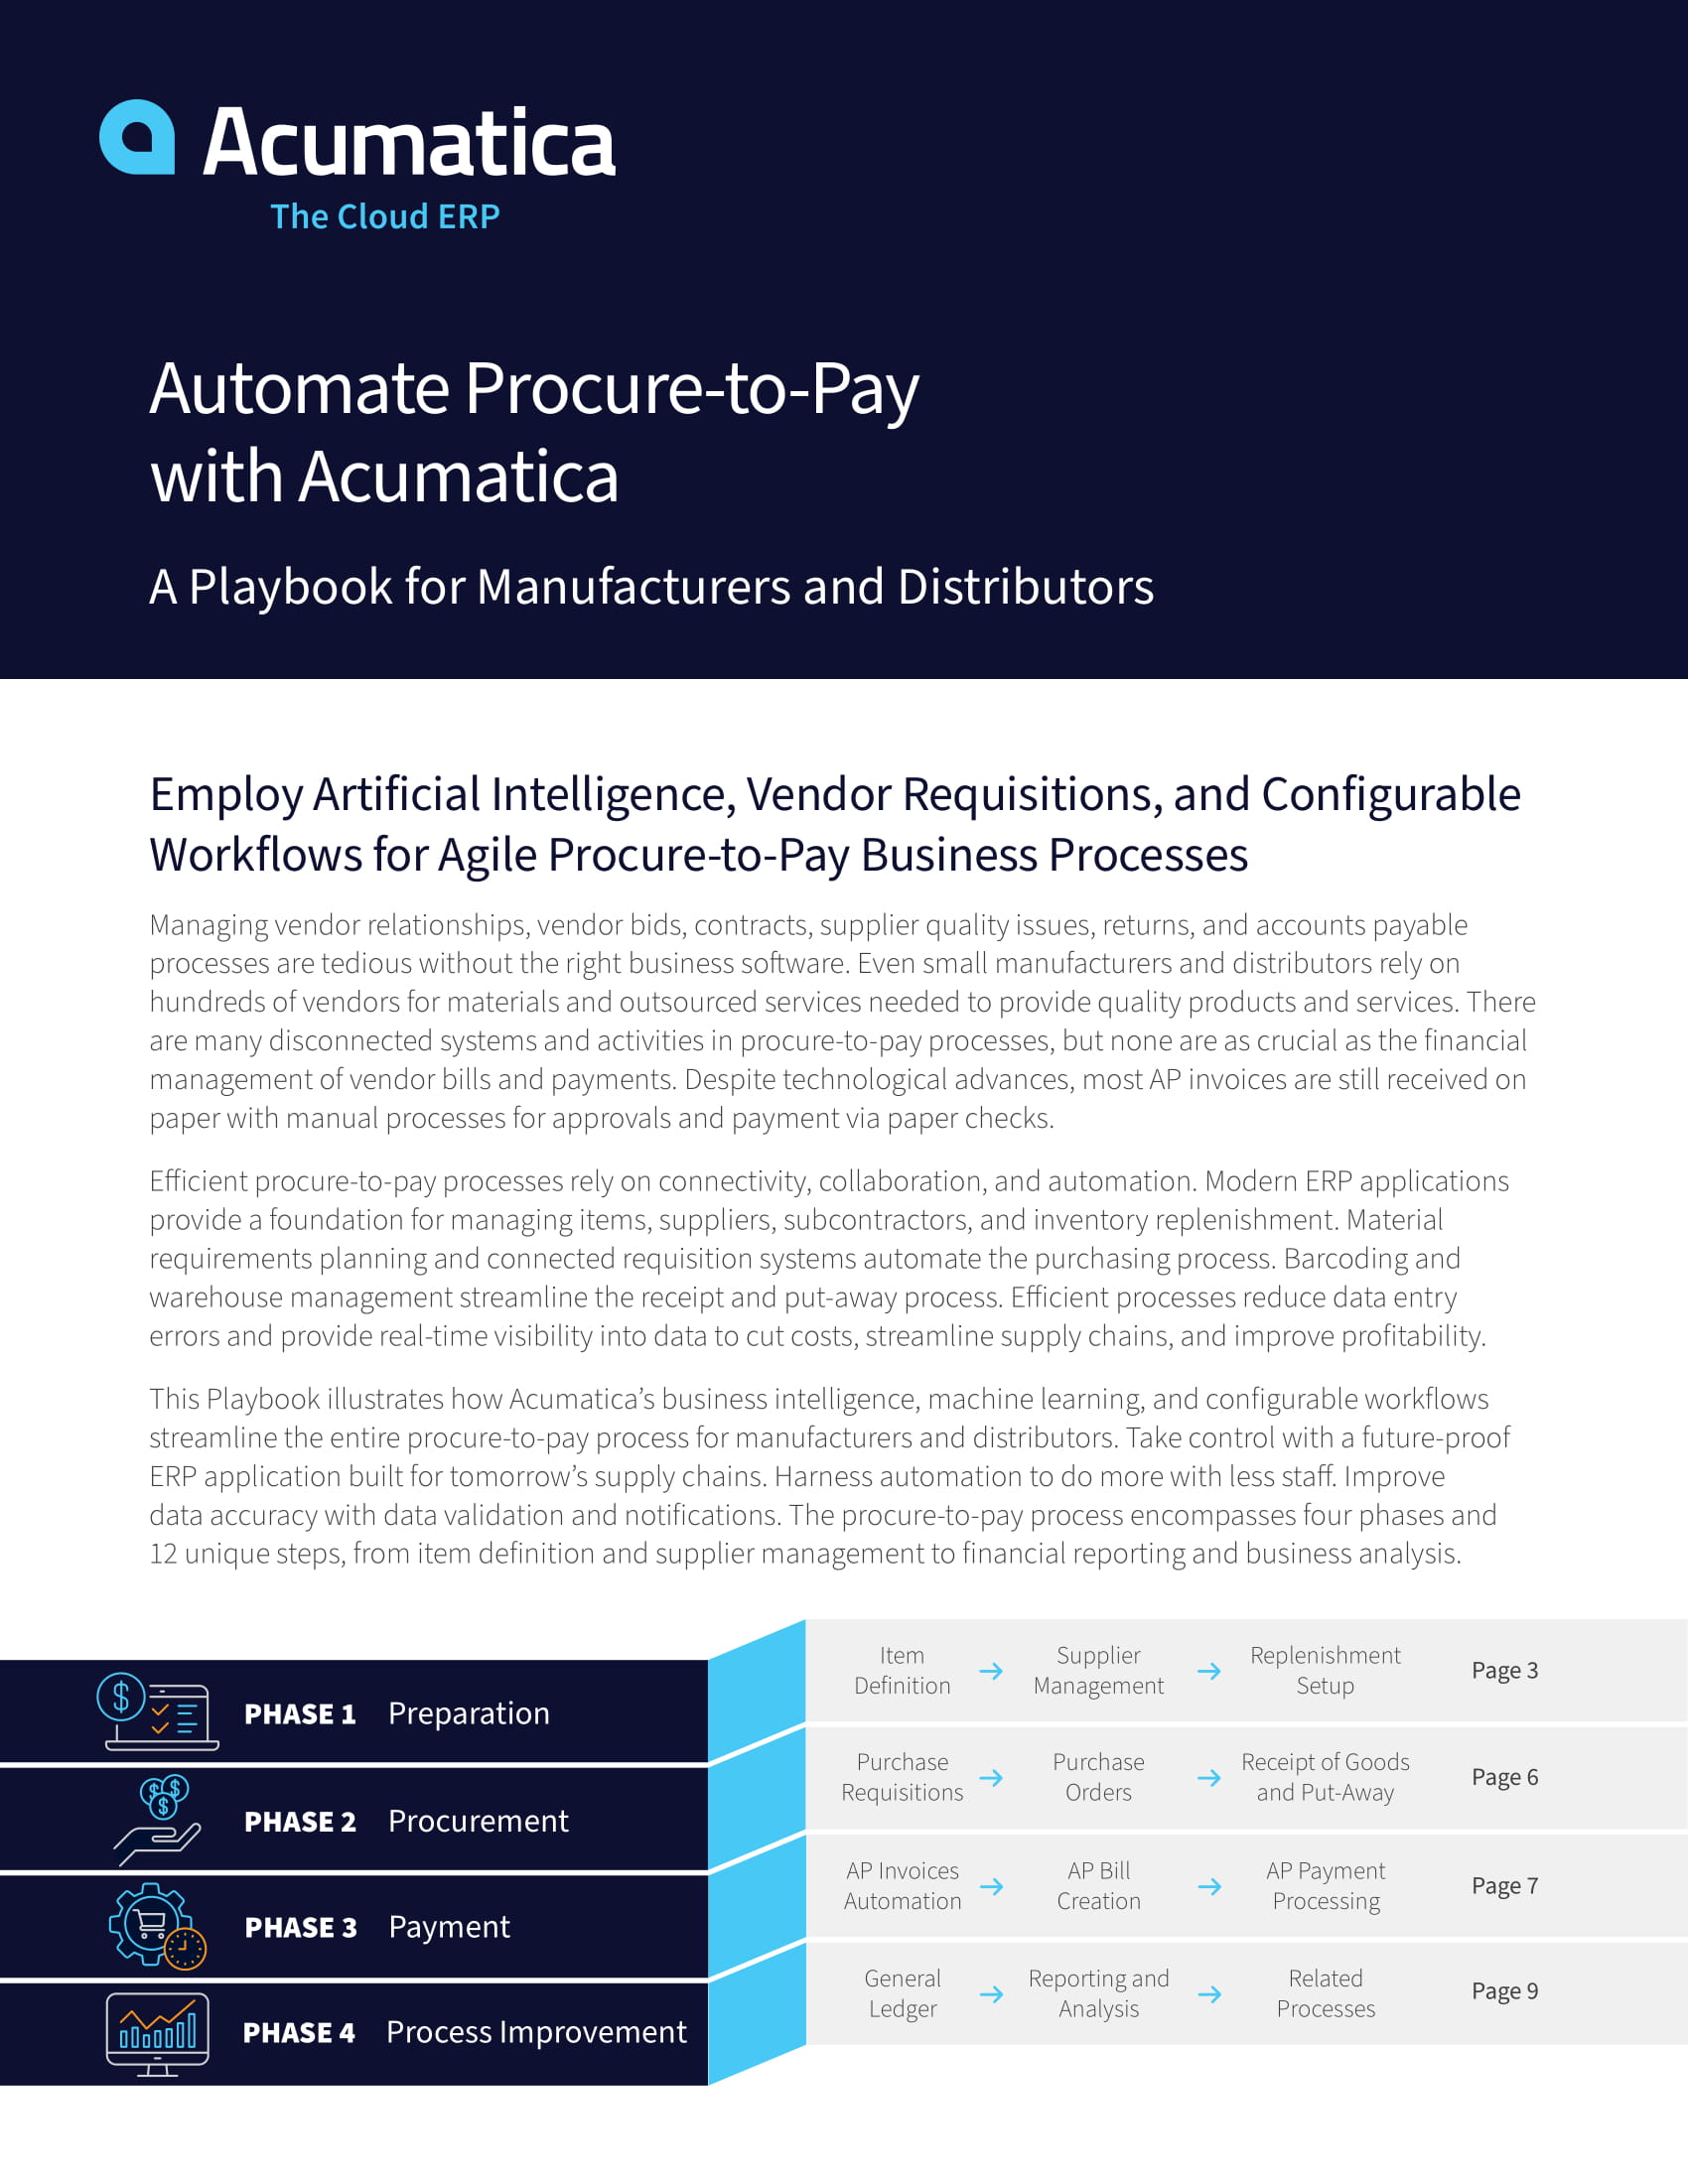 Uso de ERP en la nube para la automatización del proceso de adquisición y pago